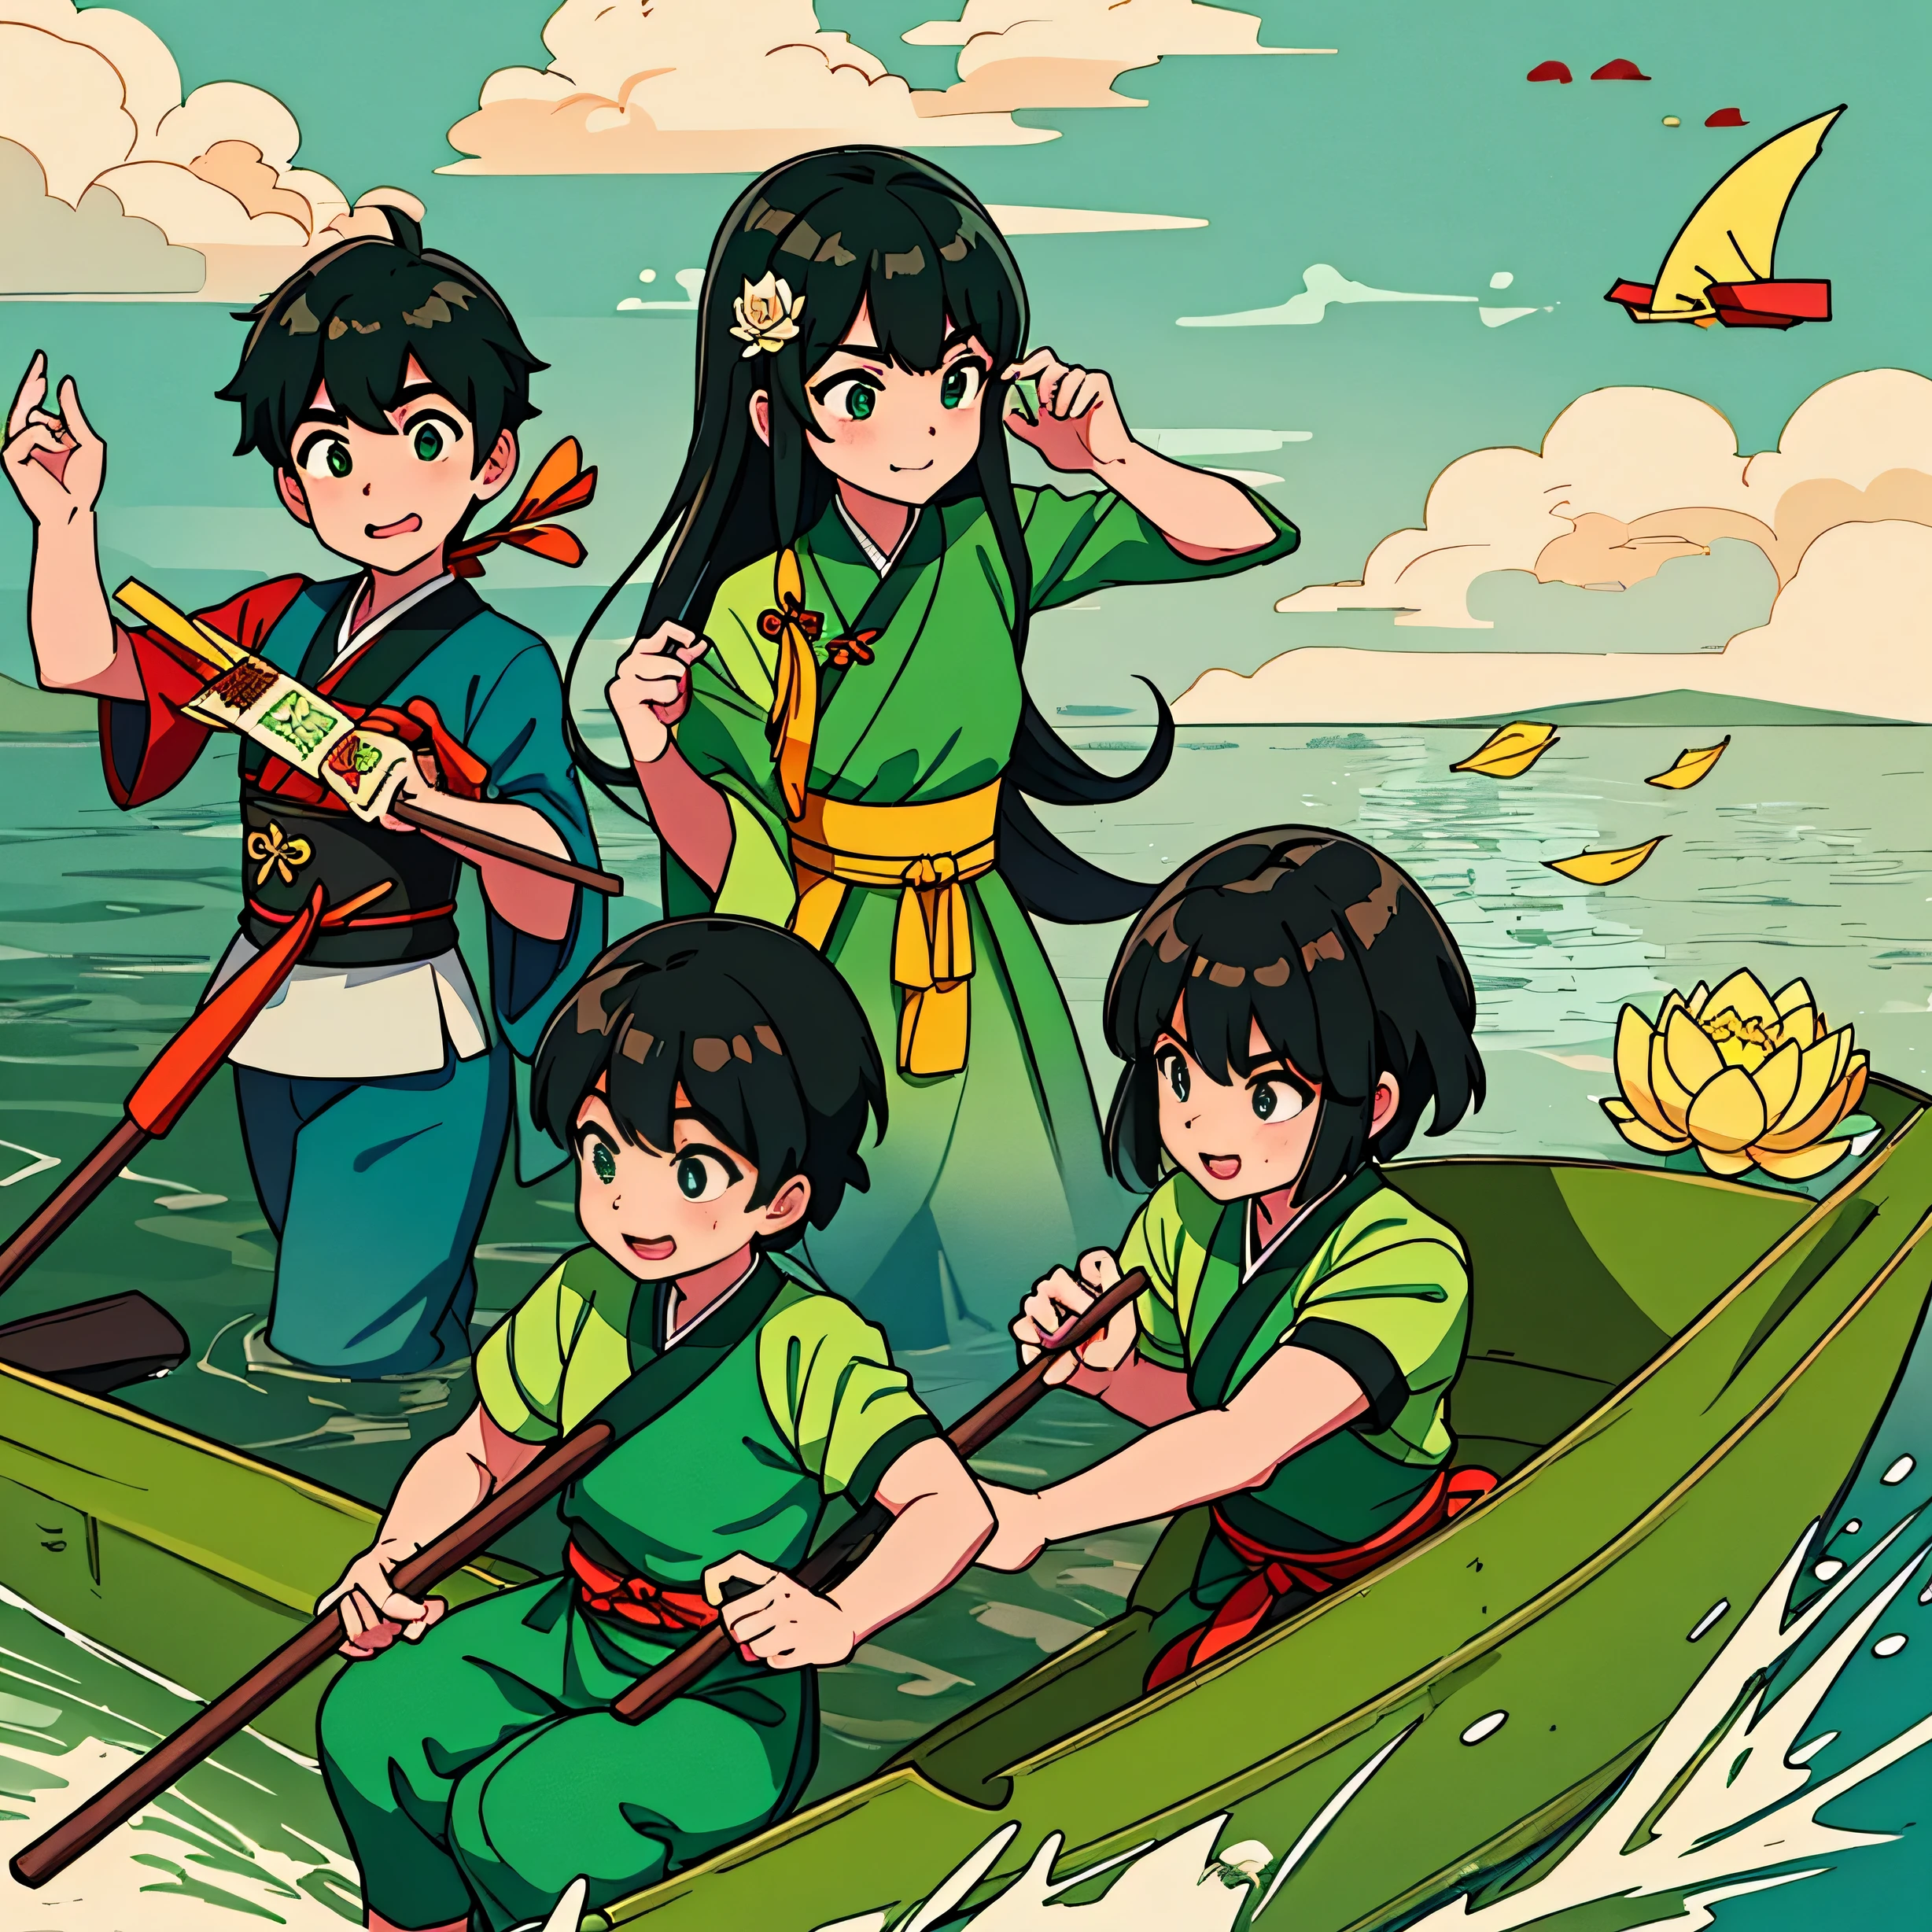 ドラゴンボートフェスティバル, 水面には漢服を着た3人の子供がドラゴンボートを漕いでいる。, 船には美味しいちまきがあります, green zongzi are 非常に詳細な, 最高の品質, 水の上に蓮の葉がある, 非常に詳細な